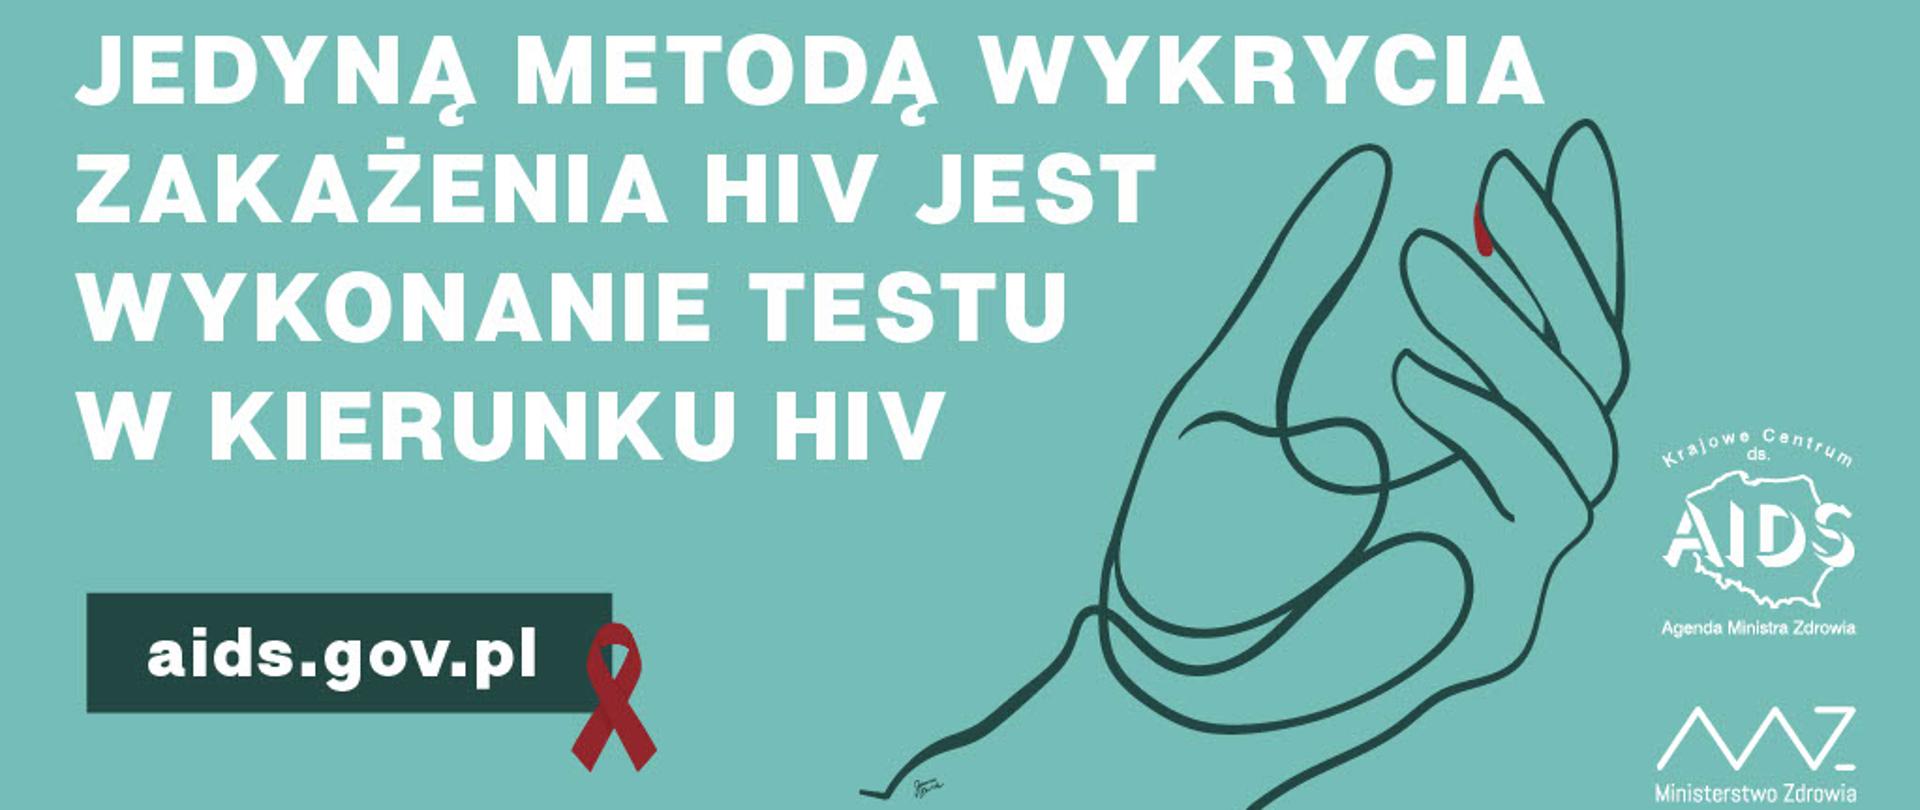 Na zielonym tle zarys dłoni z kroplą krwi oraz hasło "Jedyną metodą wykrycia zakażenia HIV jest wykonanie testu w kierunku HIV"